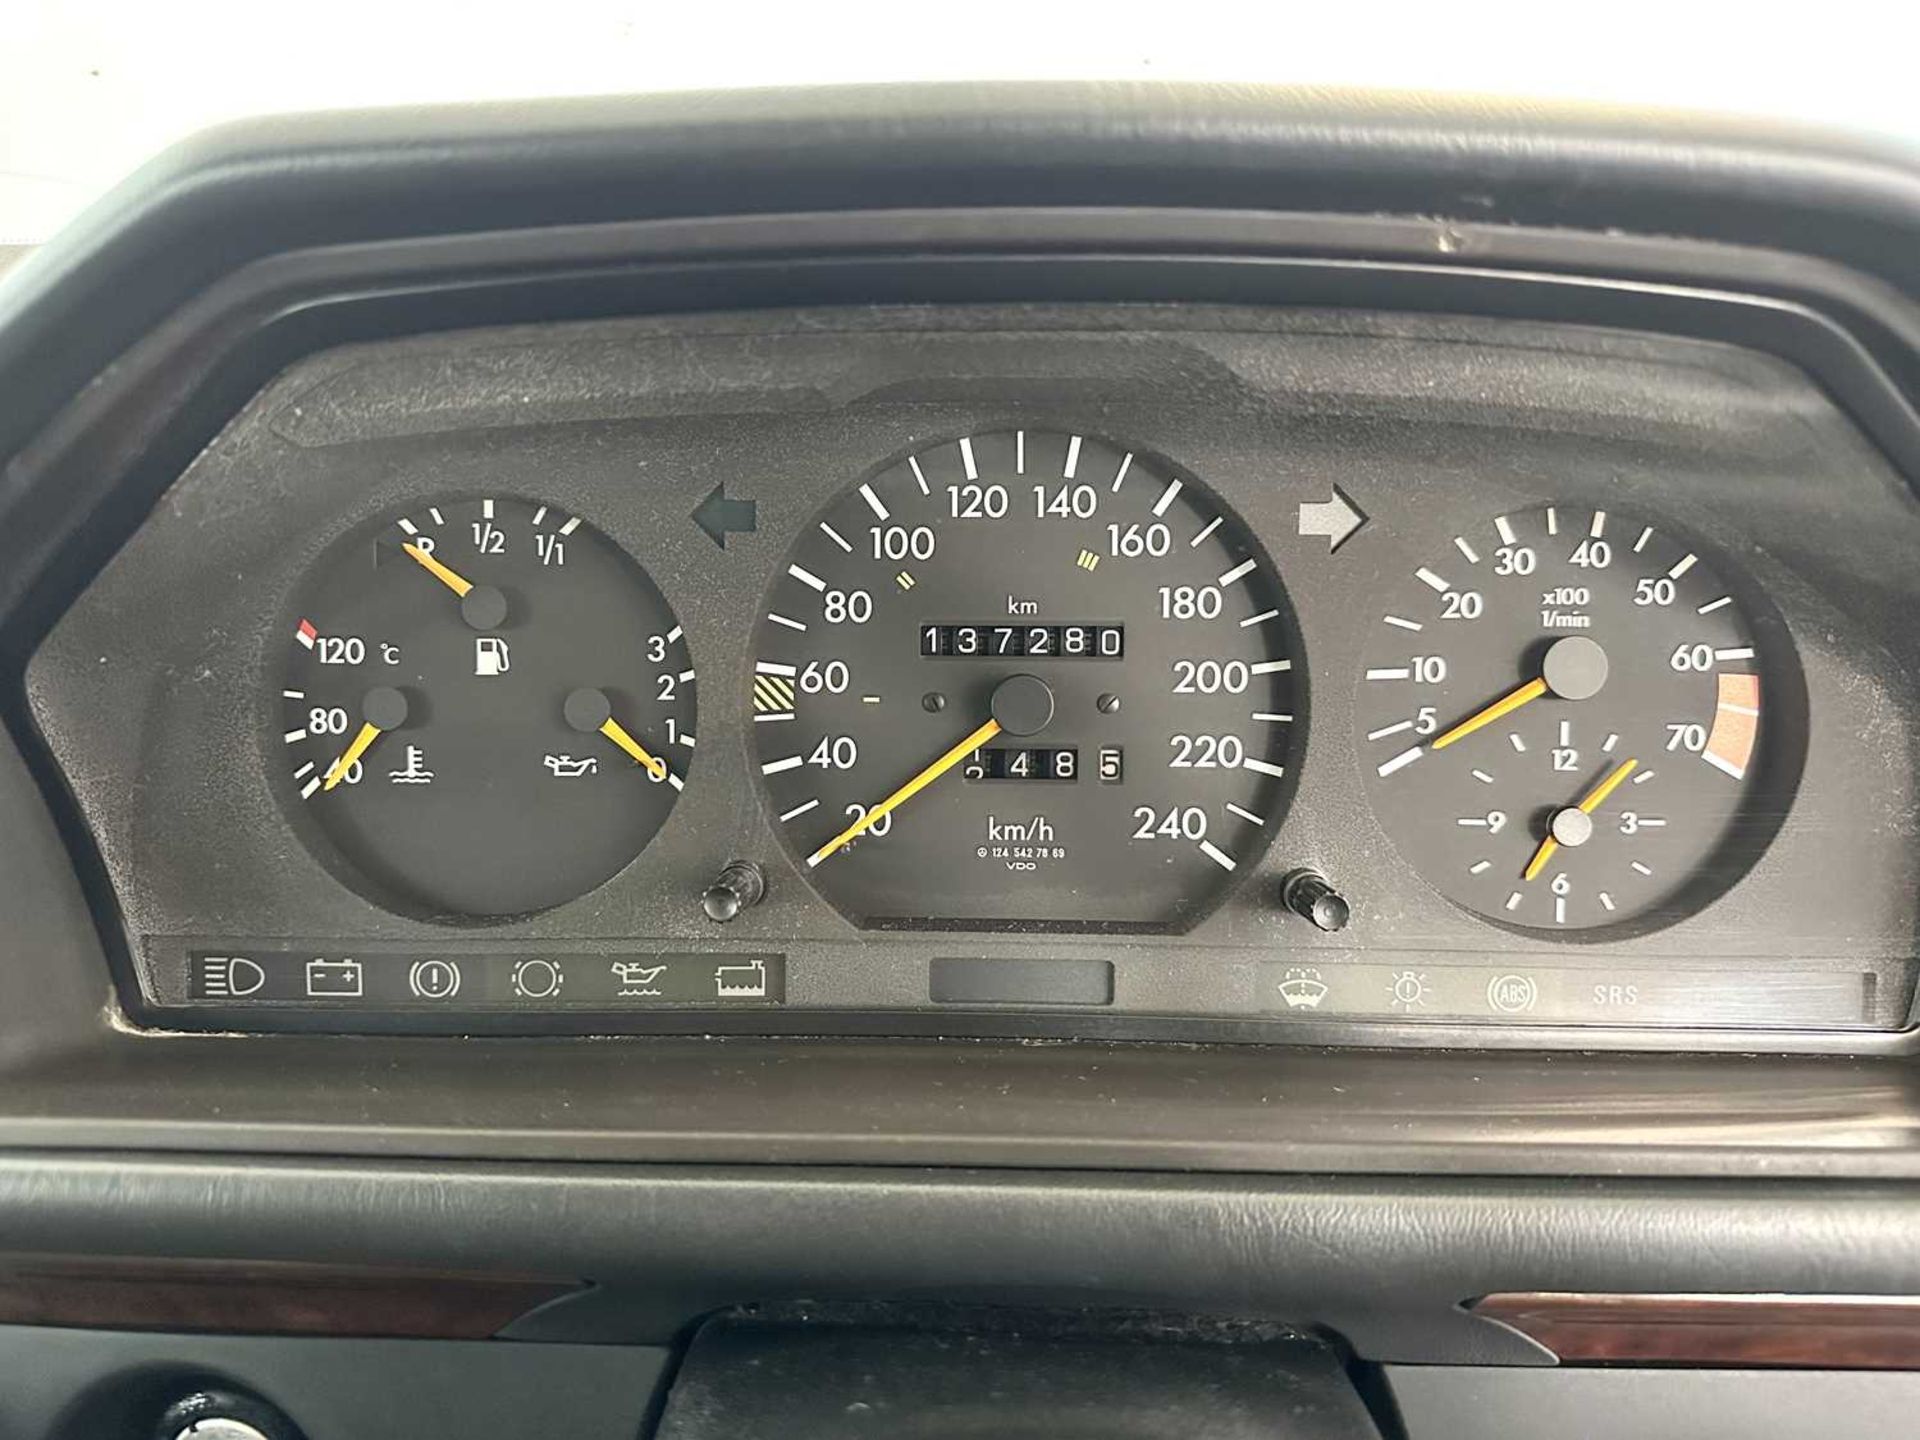 1993 Mercedes-Benz 200E - Image 32 of 33